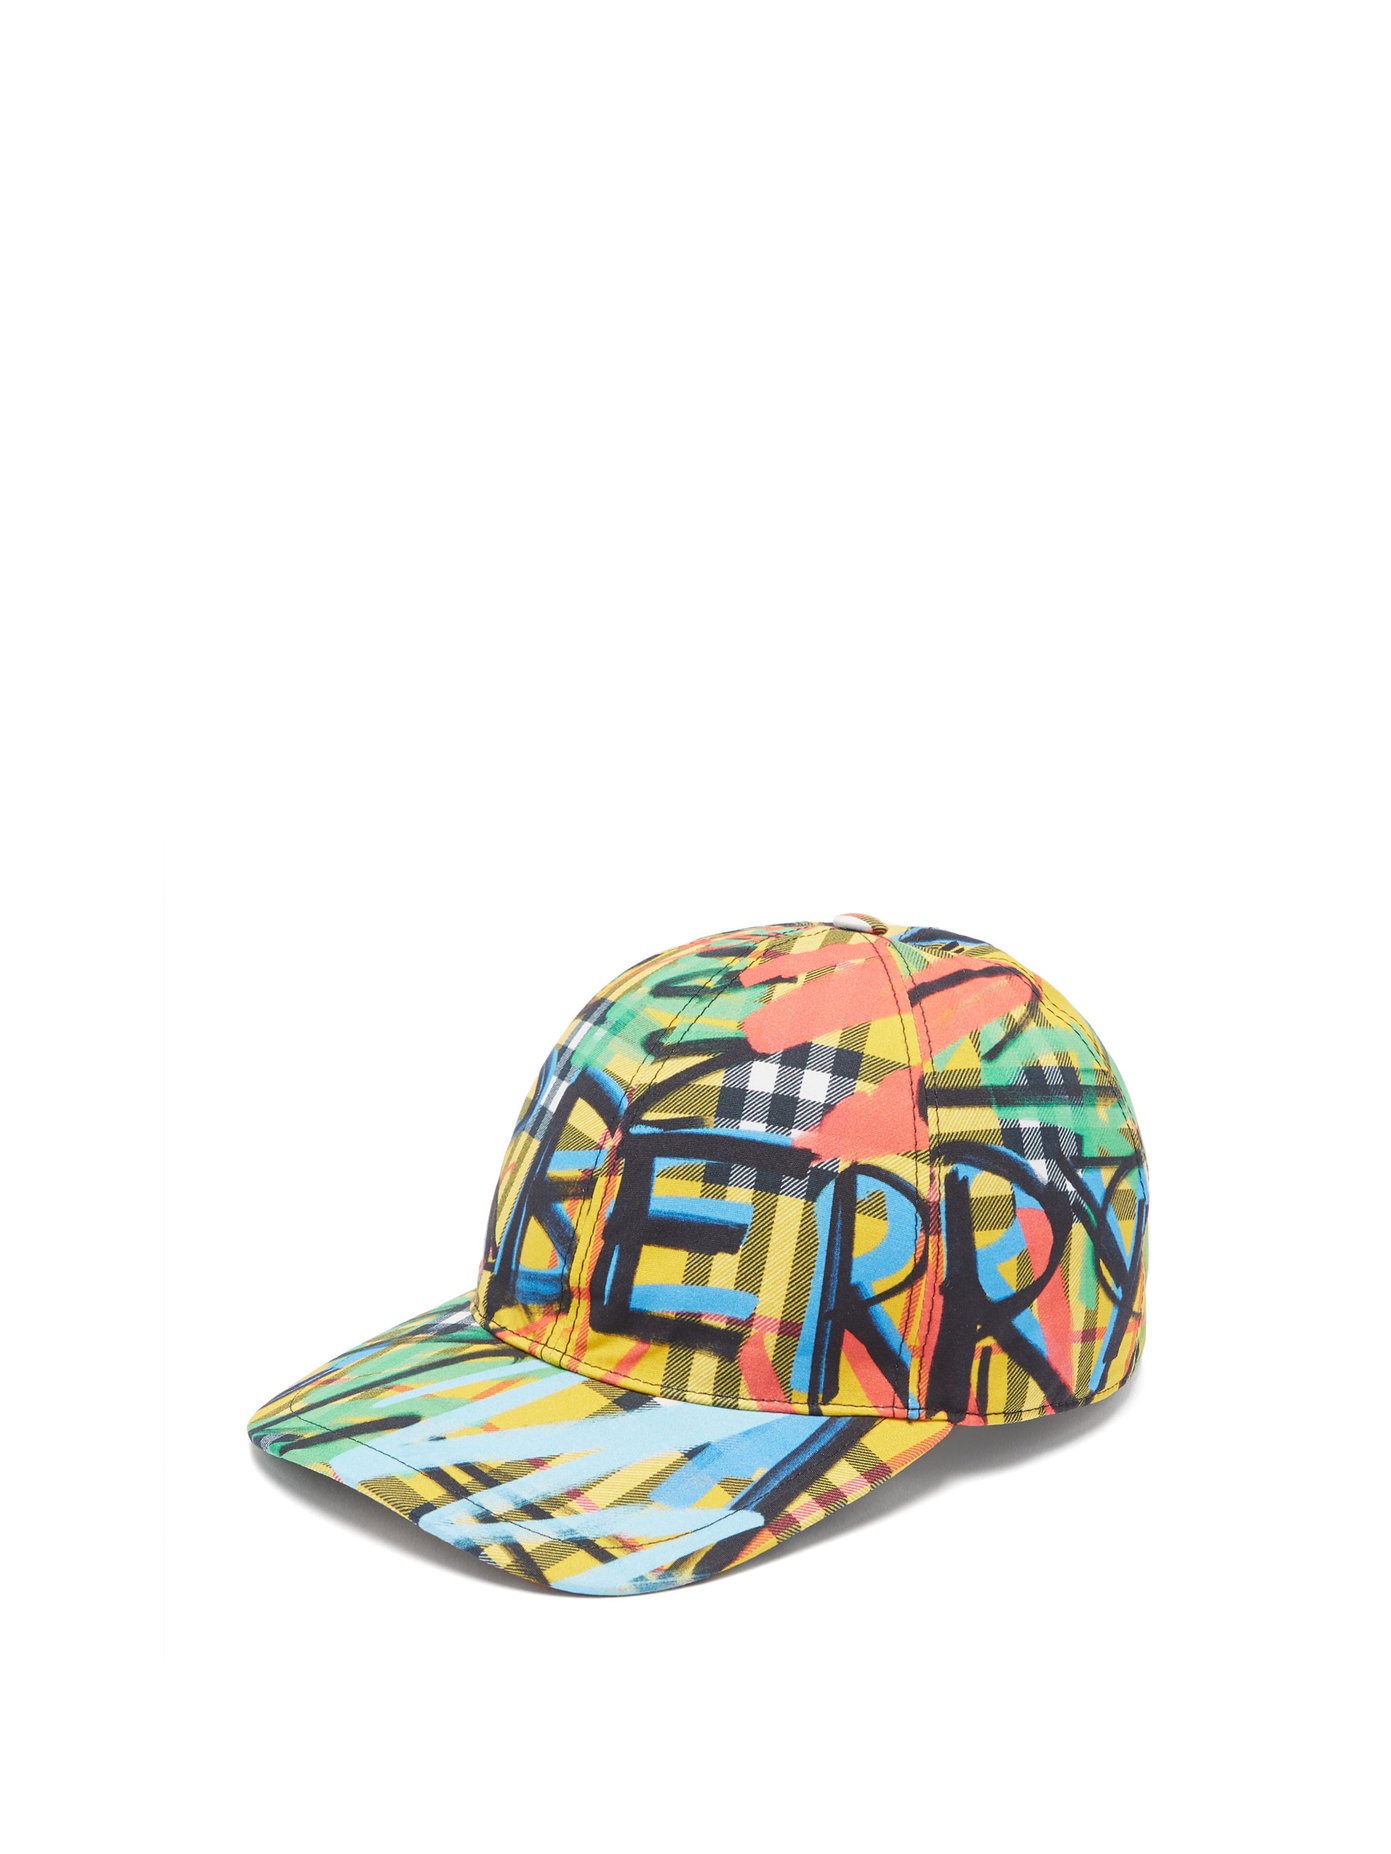 burberry graffiti cap